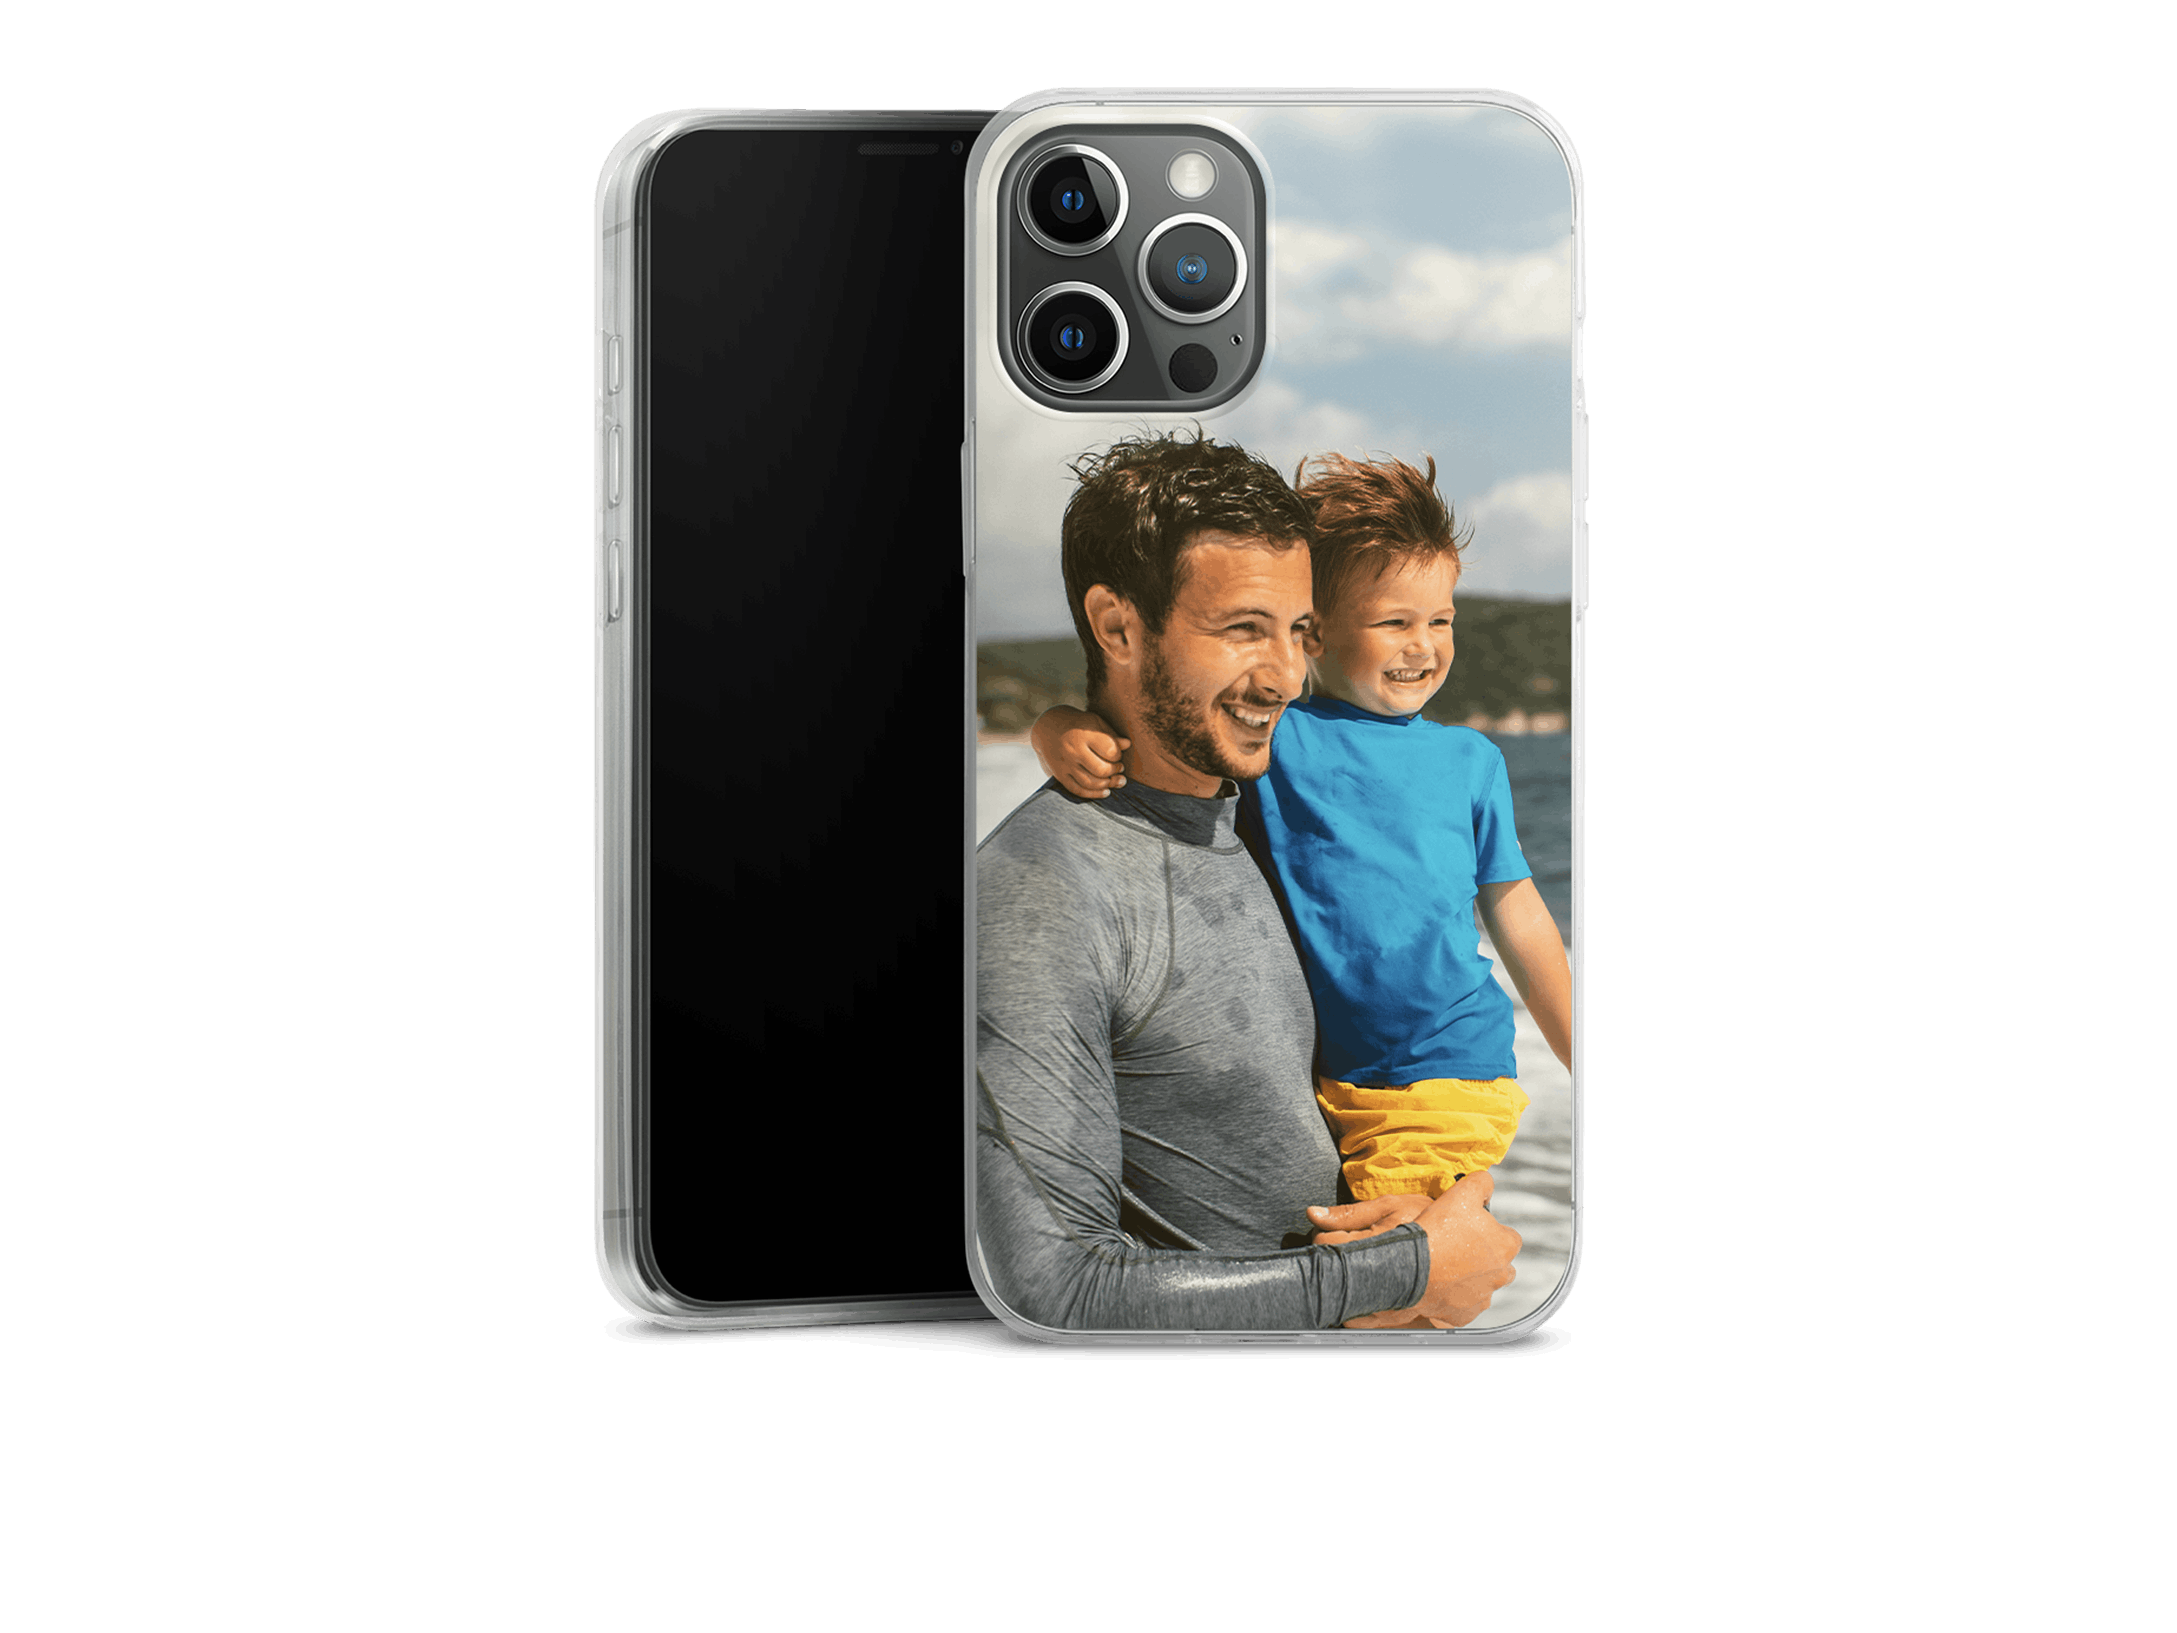 Ultraslim silikonecover til iPhone med foto af en far med sin lille søn i armene